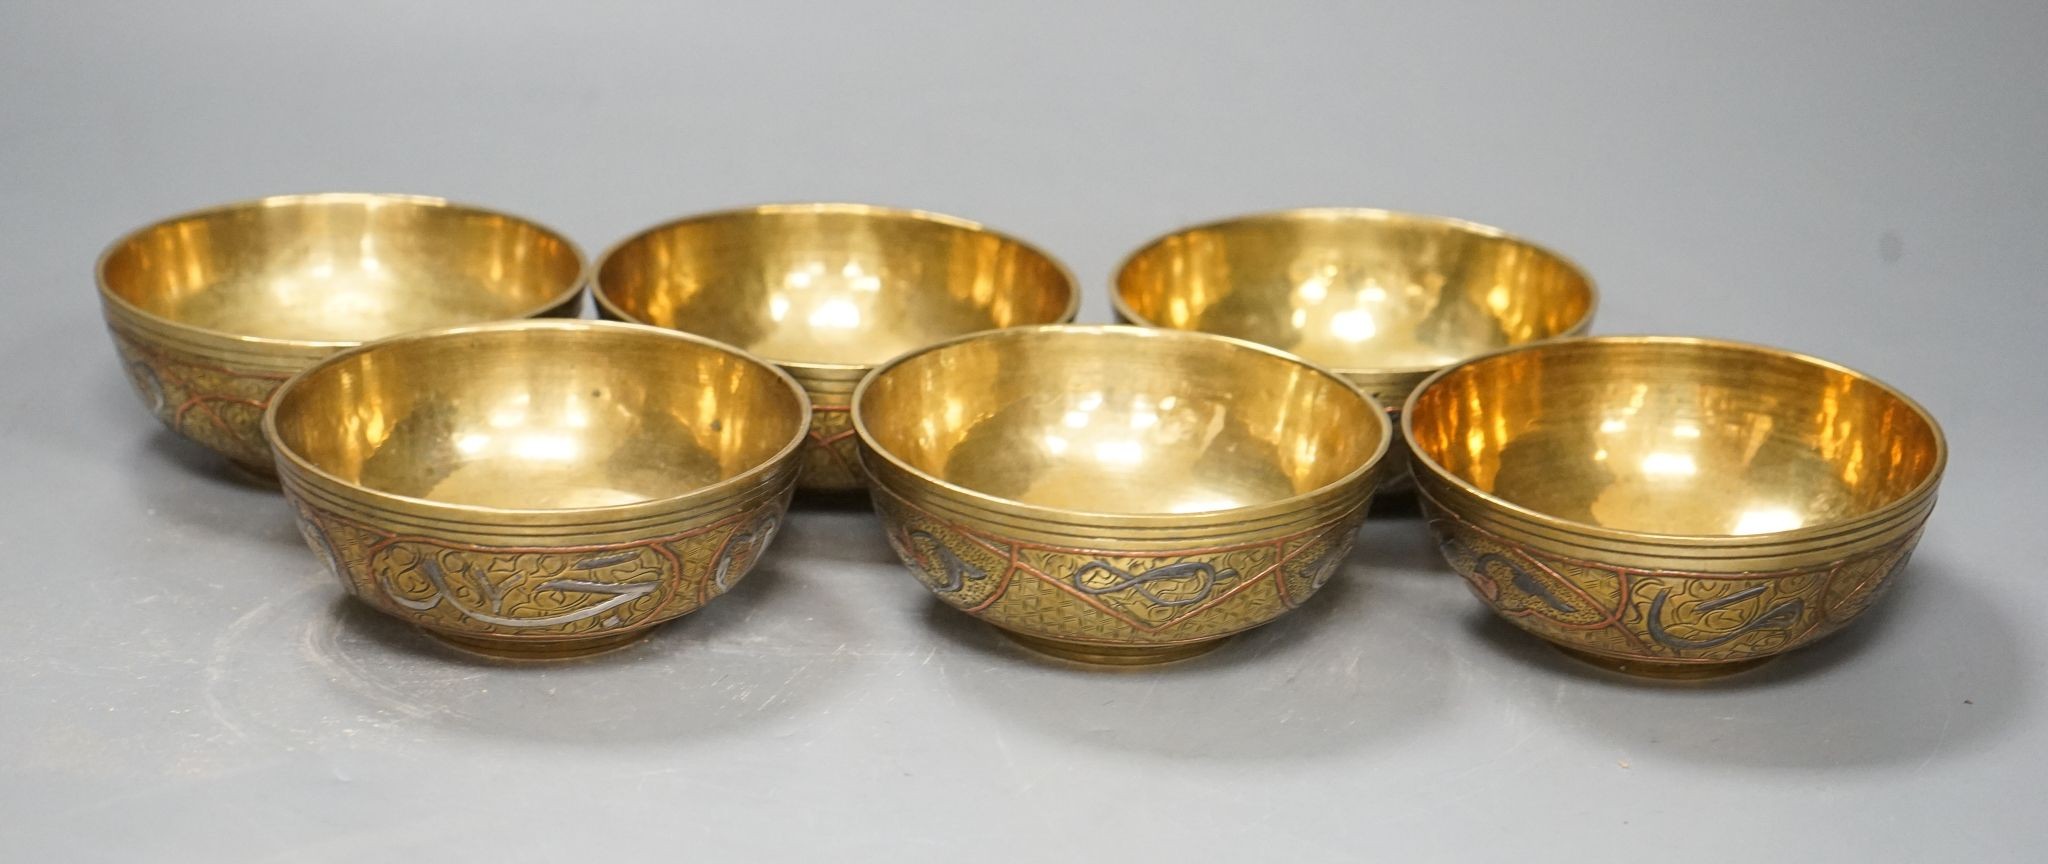 A set of six Cairo bowls, 10cm diameter